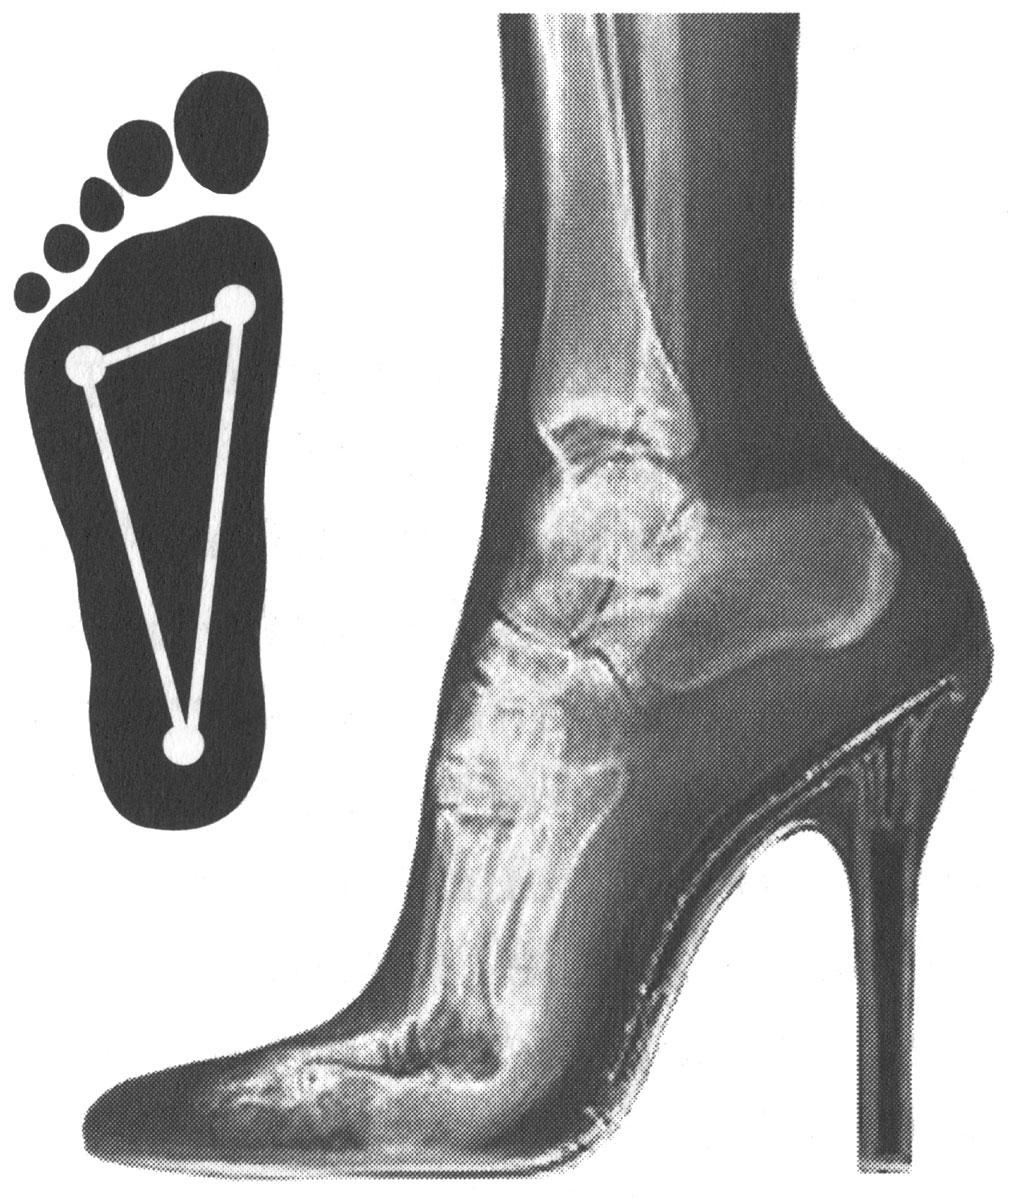 Нагрузка на опорные точки стопы при использовании обуви на высоком каблуке